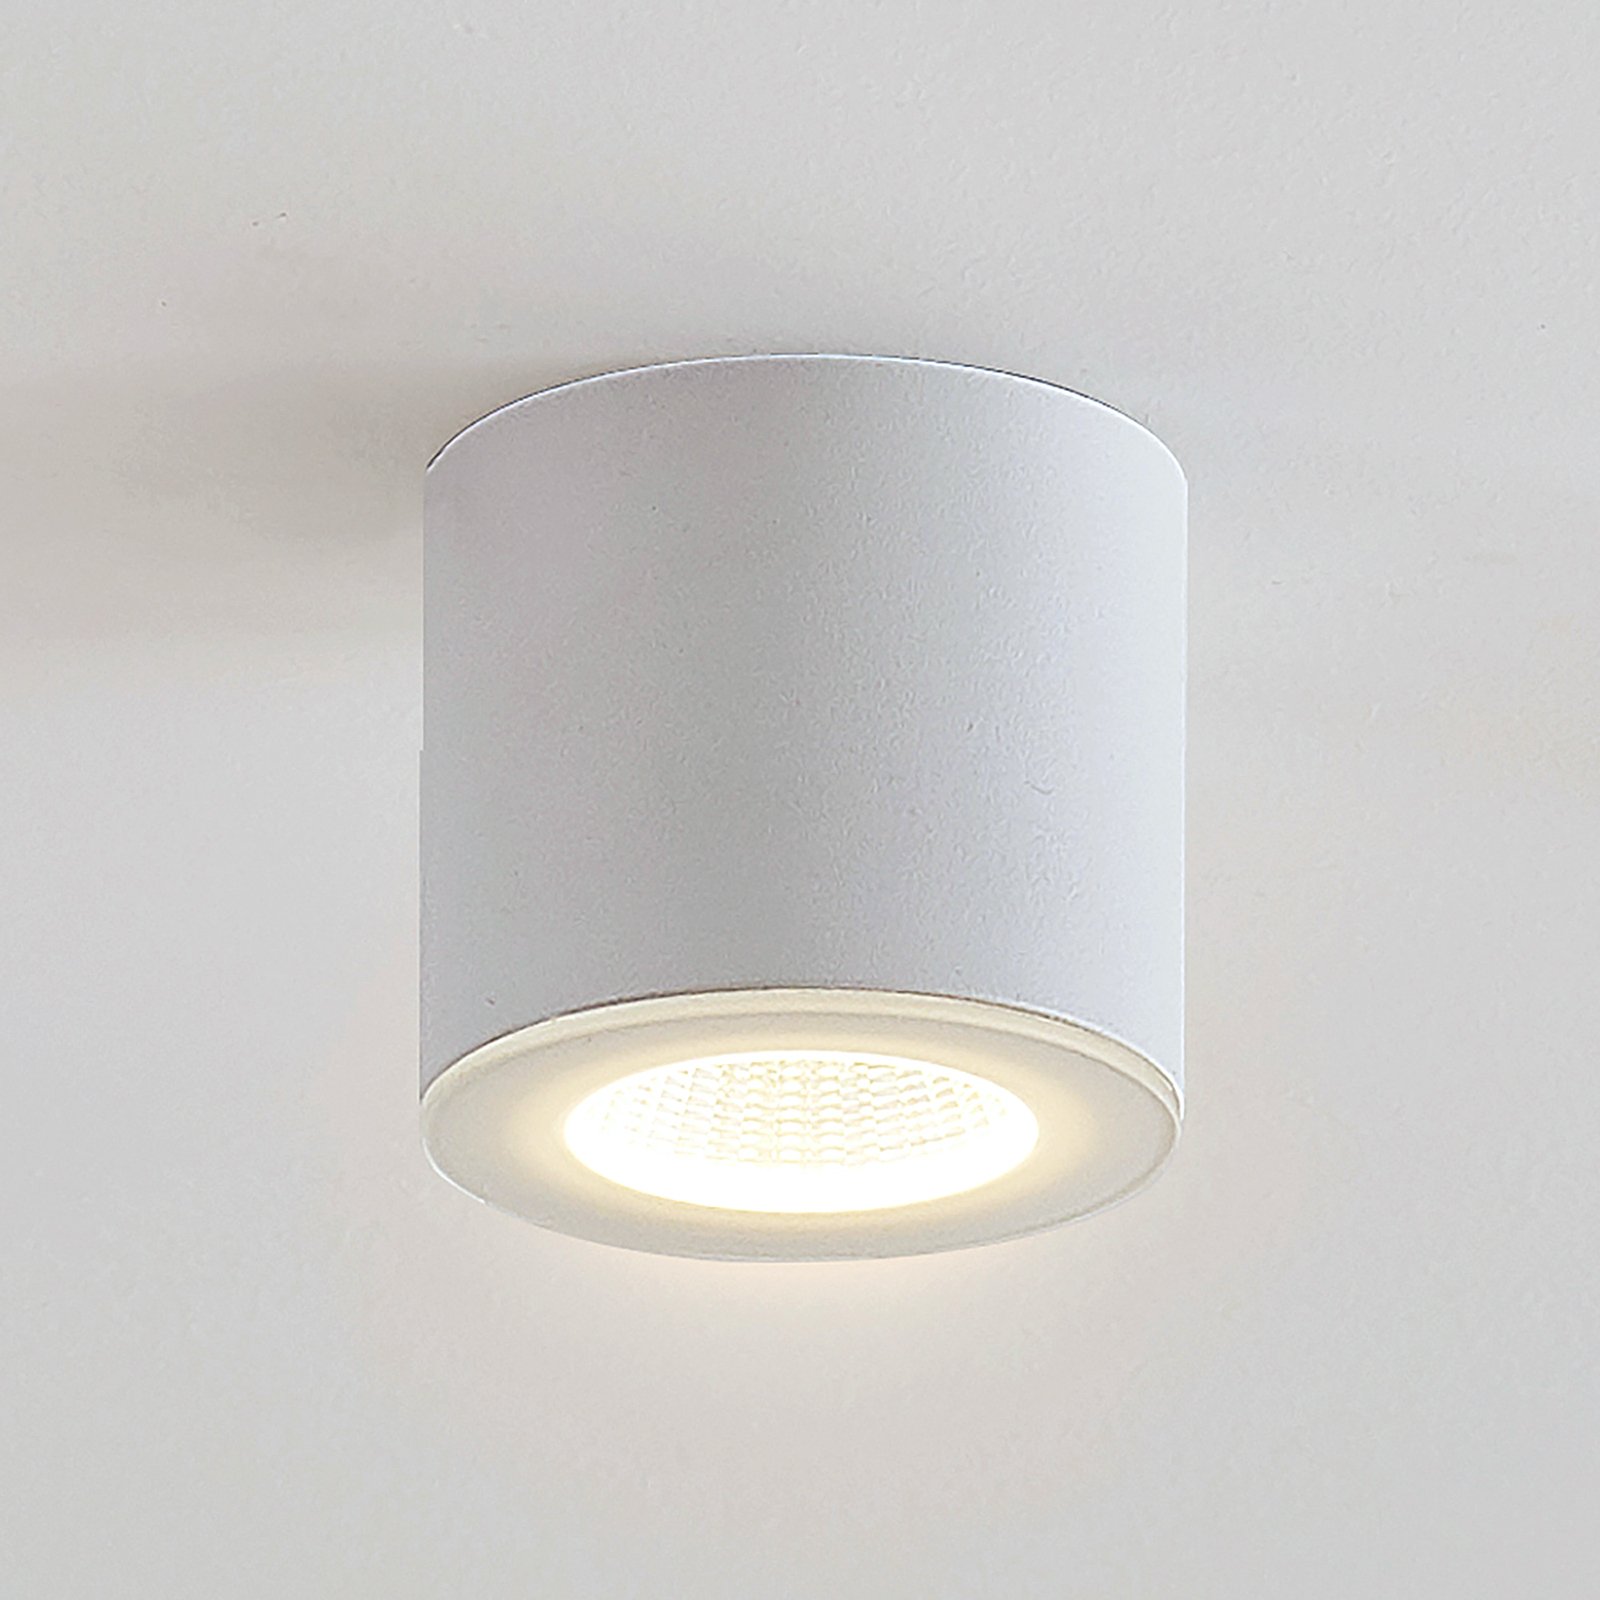 LED-Downlight Demiran in Weiß, rund